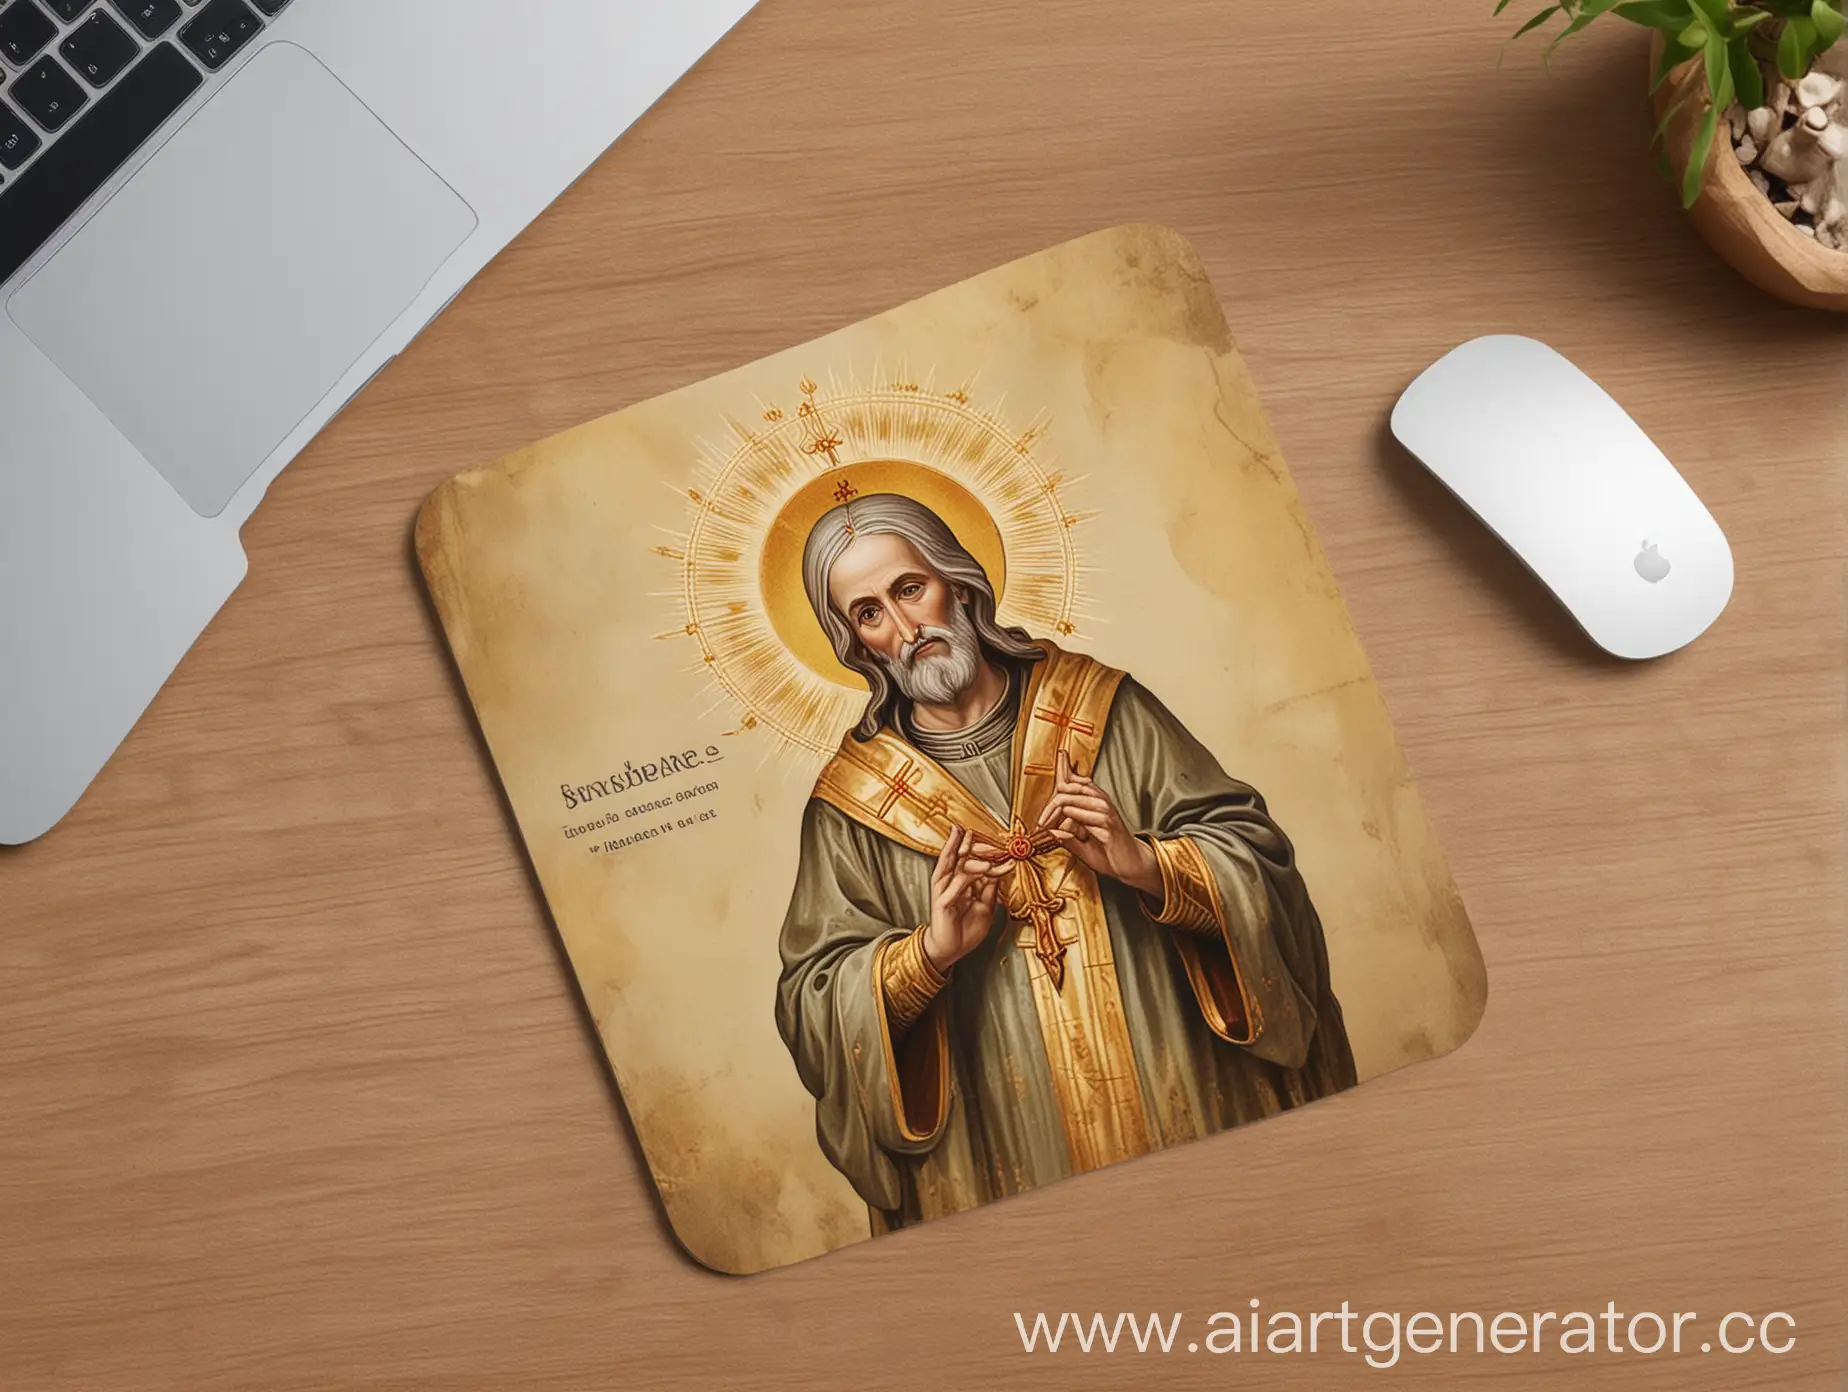 Дизайн карточки товара для коврика для мыши, цвет коврика мыши это изображение святого, как в храме, рядом золотая рука и macBook, можно добавить надпись "КОВРИК ДЛЯ МЫШИ".